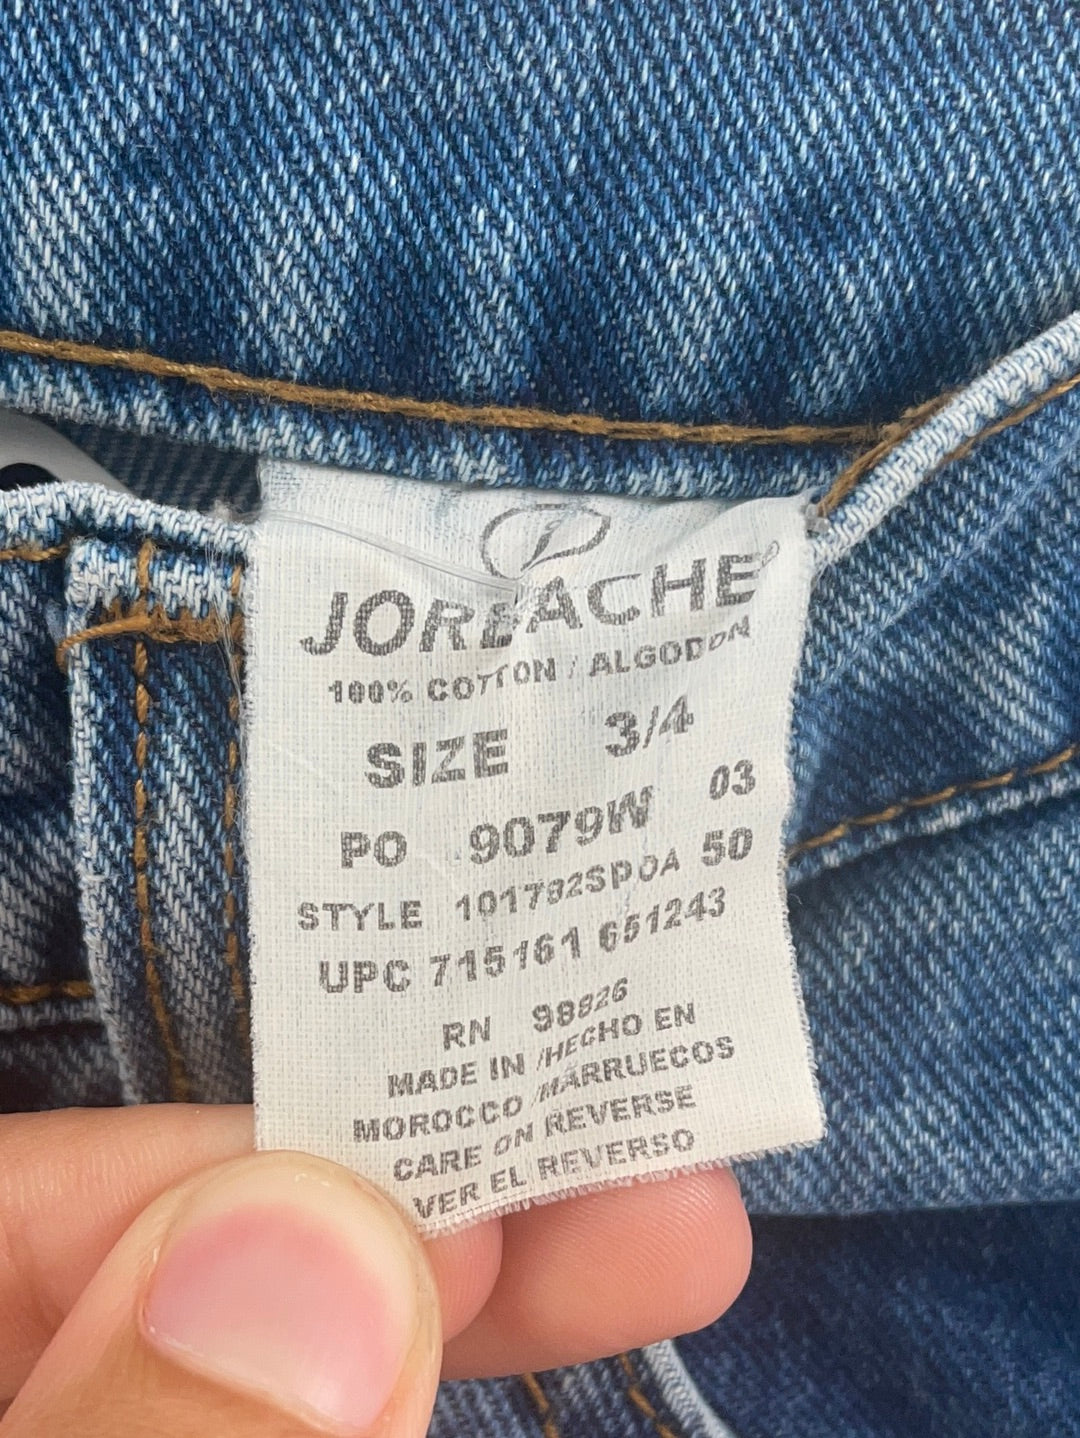 Vintage Jordache Denim Jeans (Size 3/4)